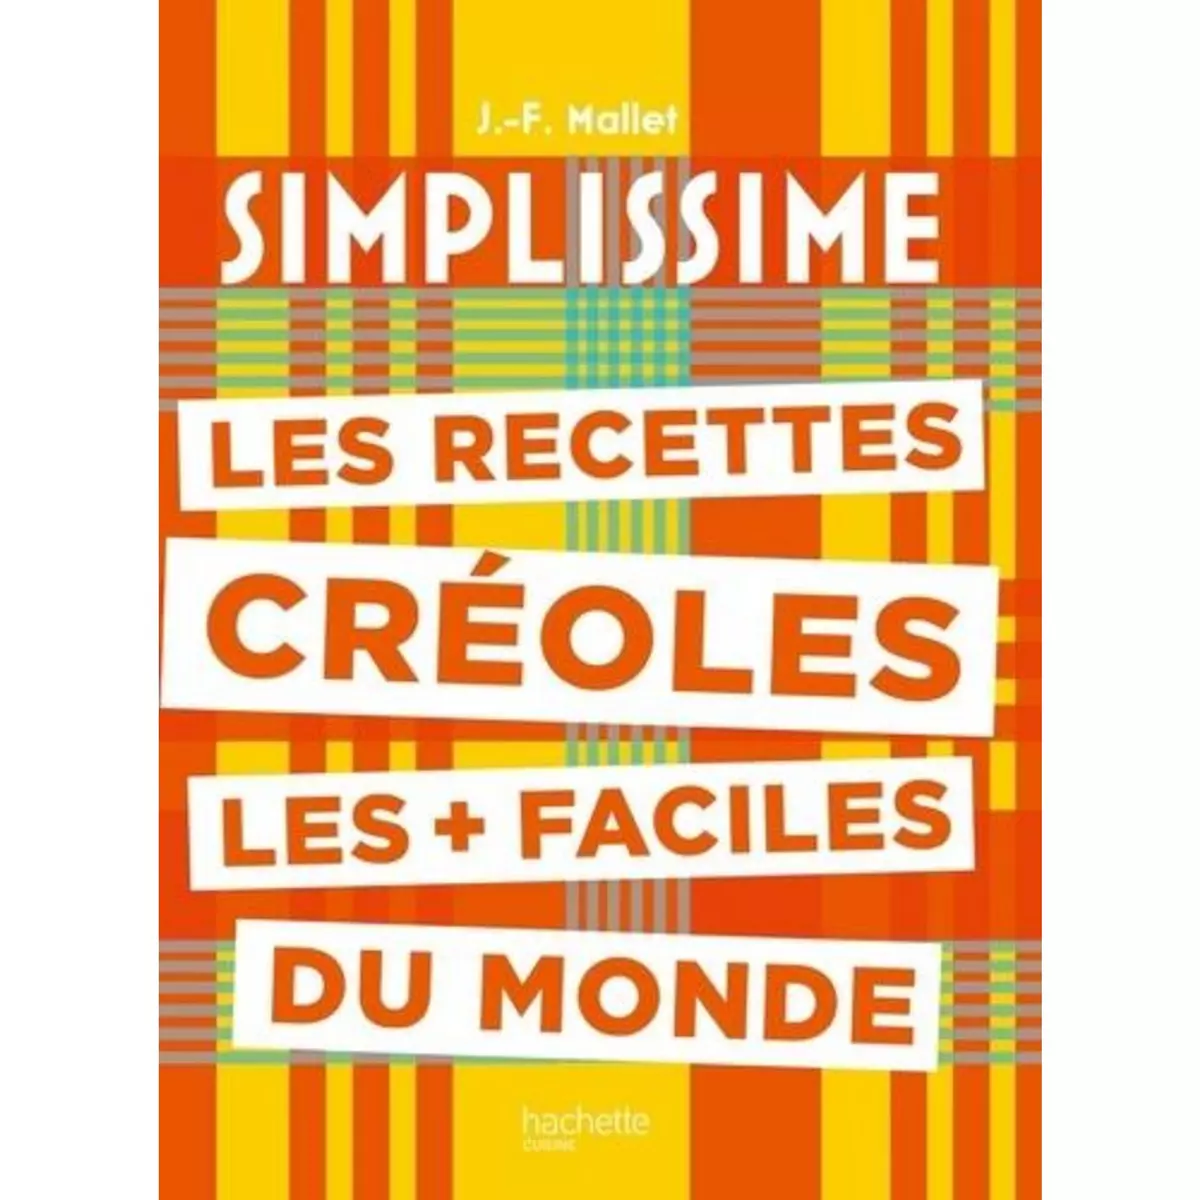  LES RECETTES CREOLES LES + FACILES DU MONDE, Mallet Jean-François